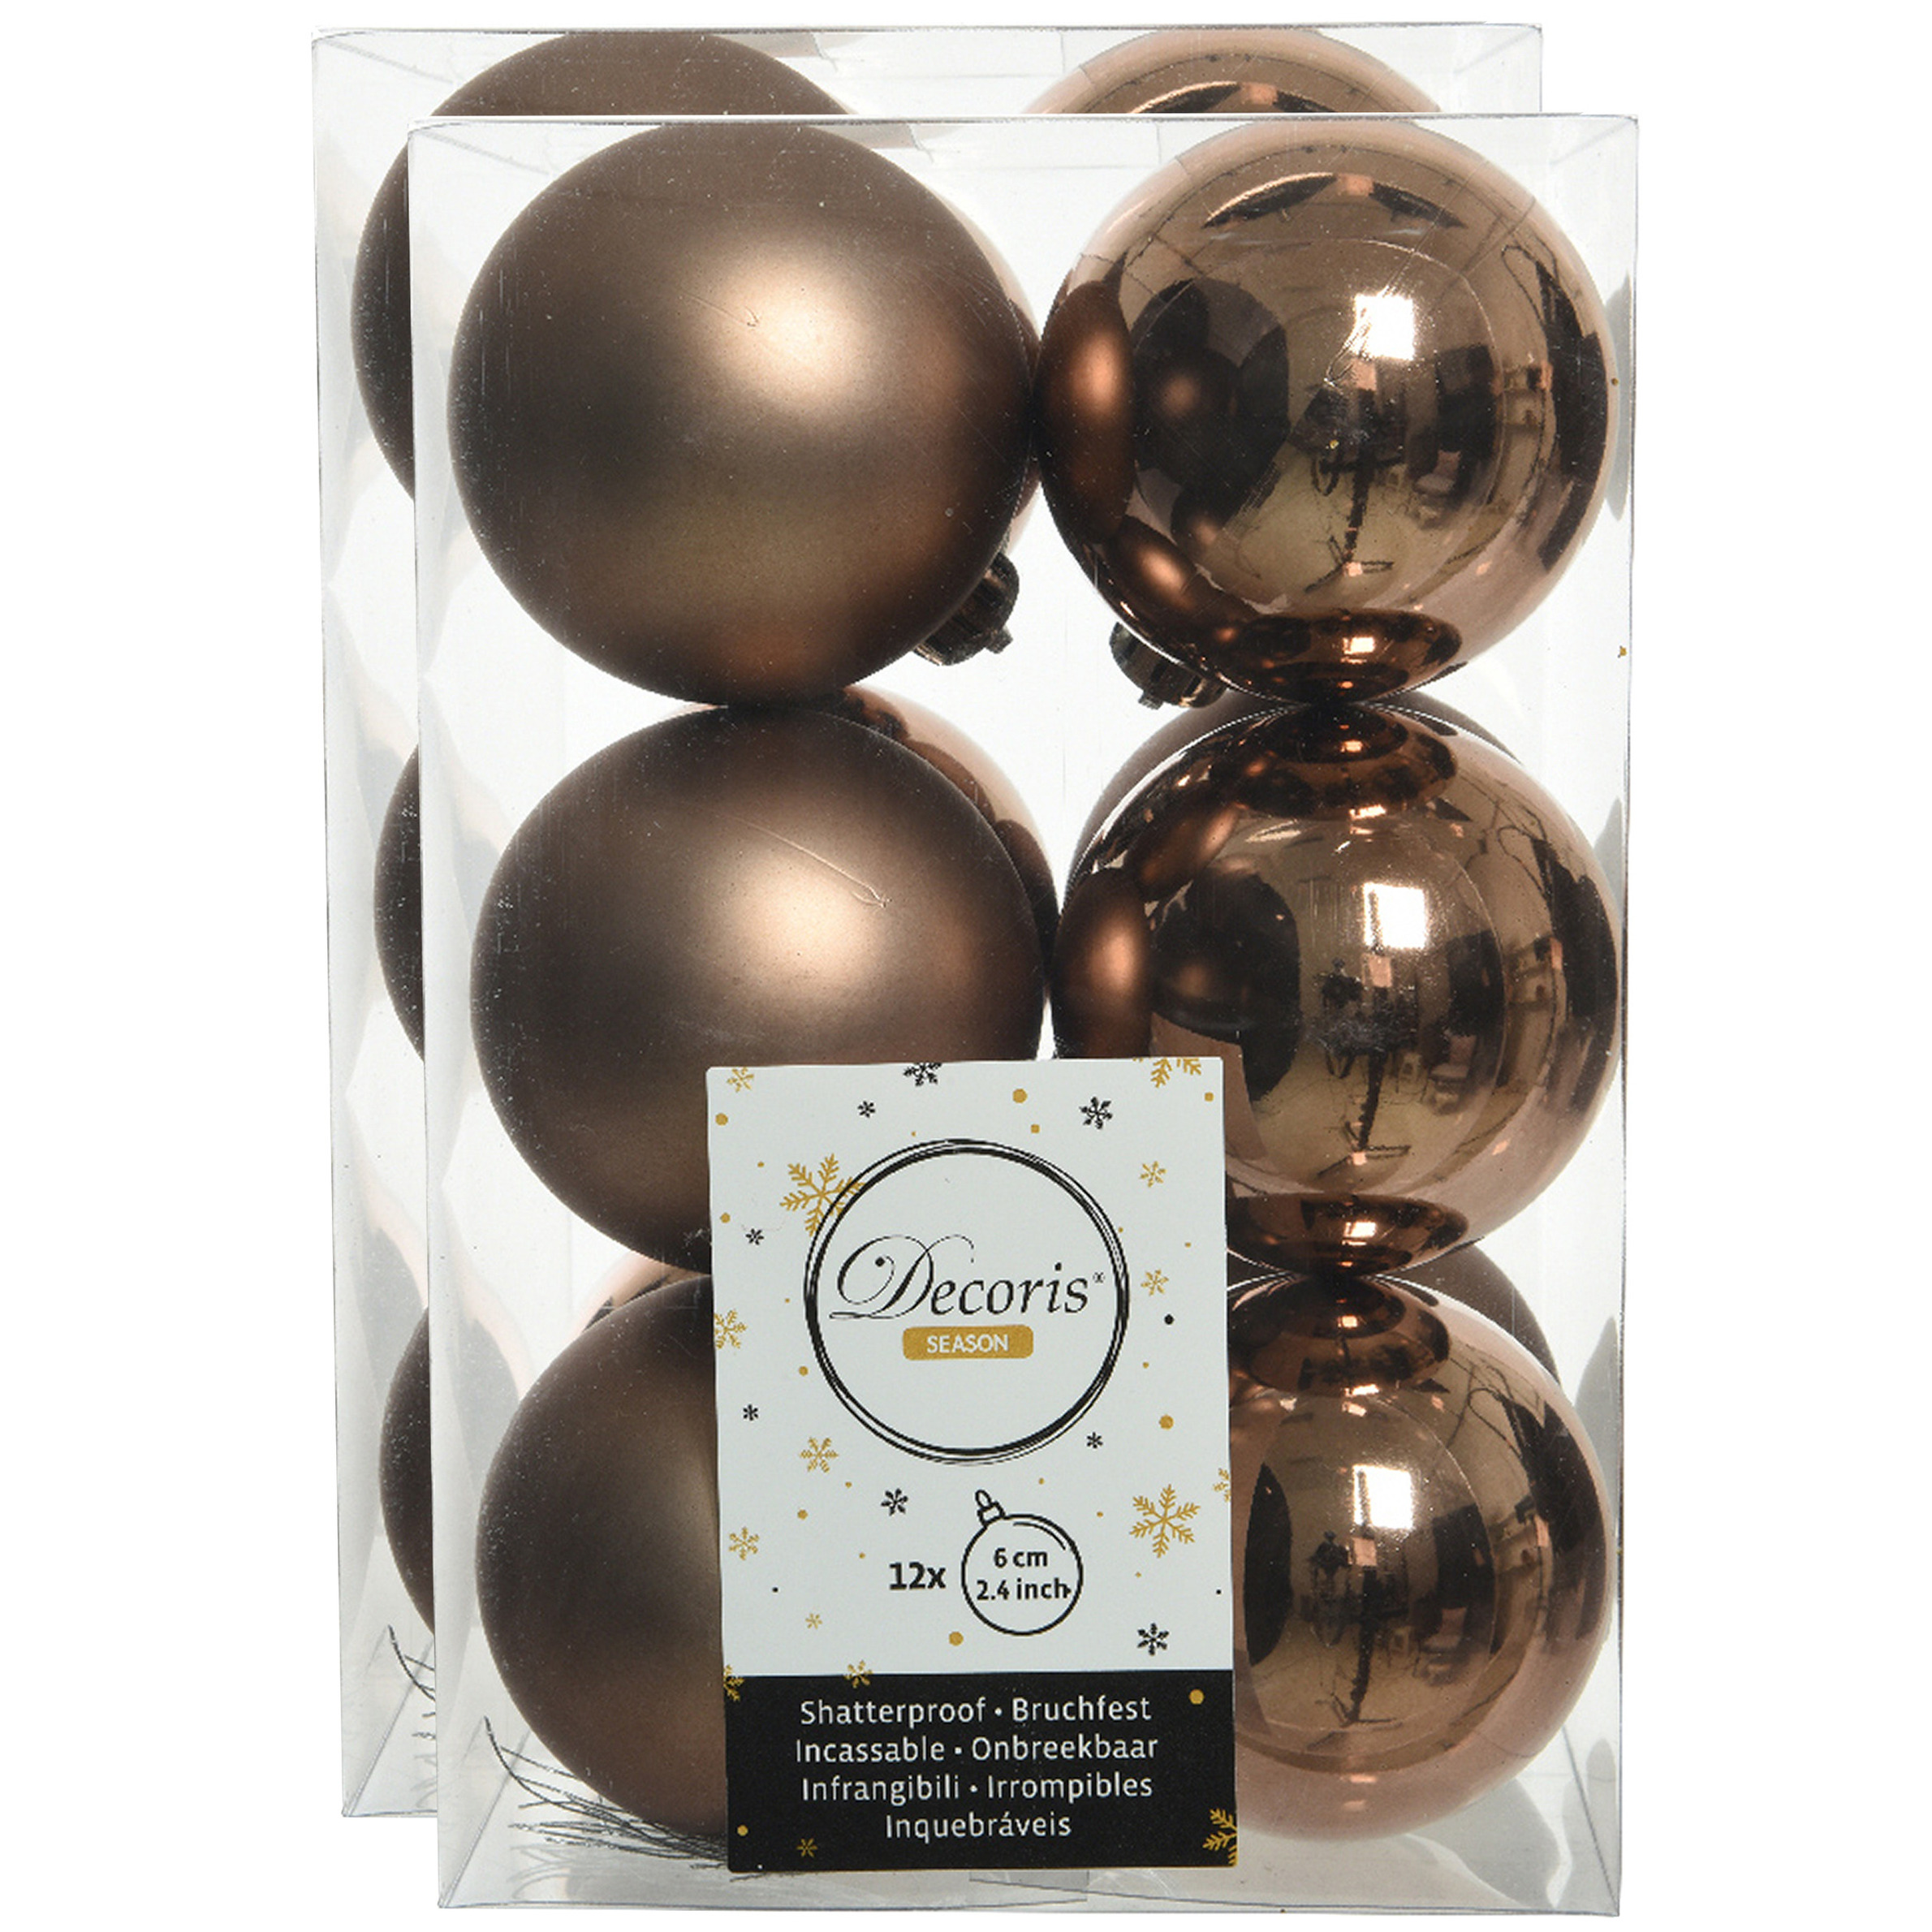 24x stuks kunststof kerstballen walnoot bruin 6 cm glans/mat